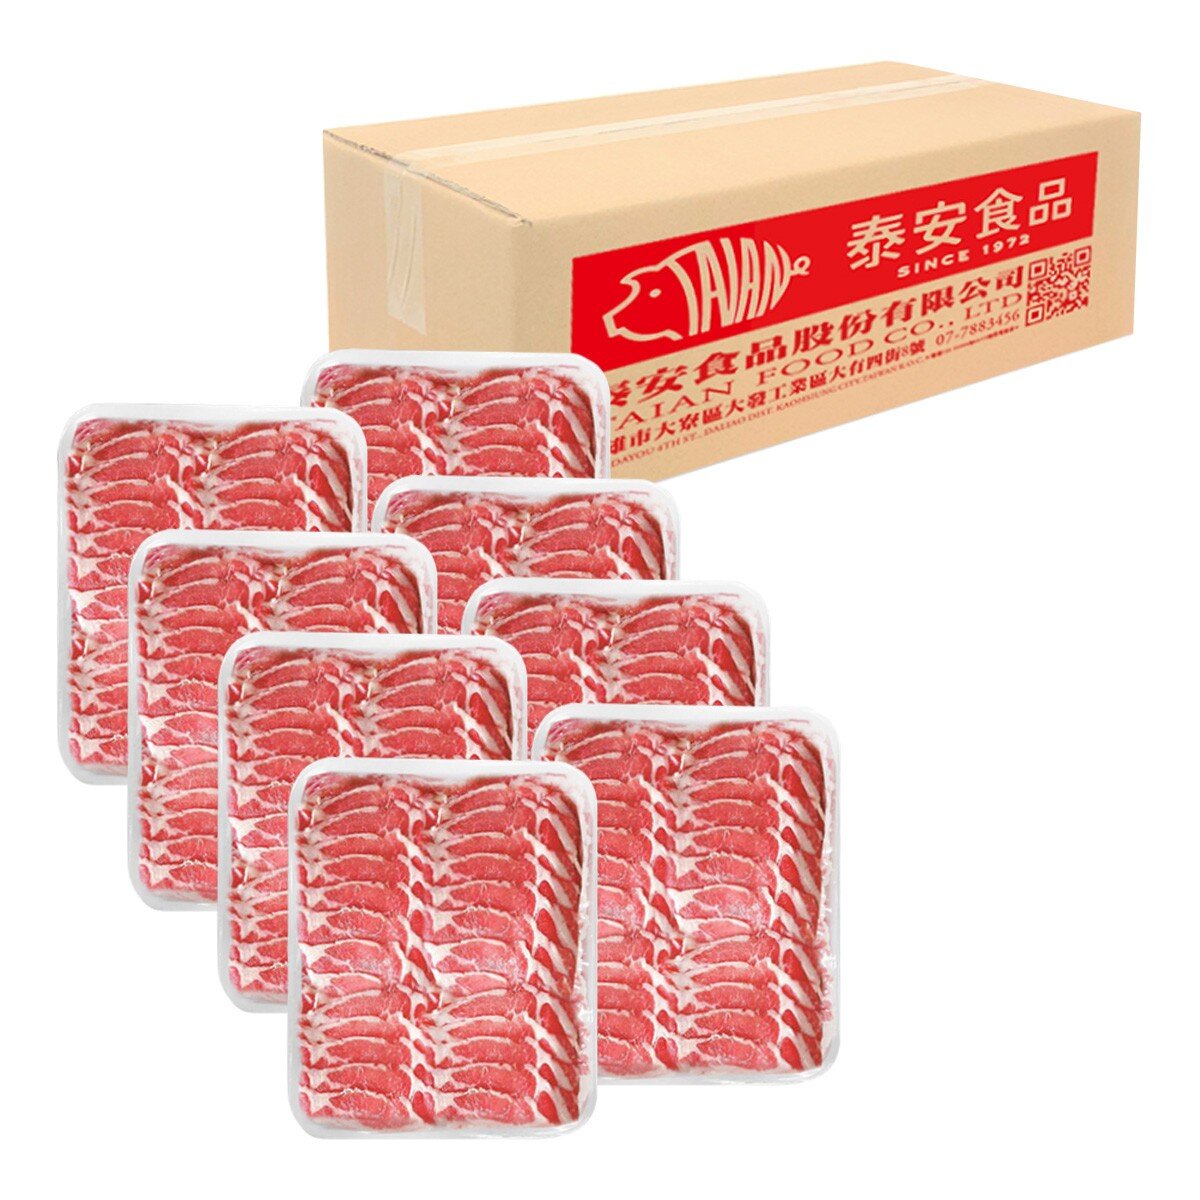 泰安 台灣豬冷凍梅花火鍋片 1.8公斤 X 8入